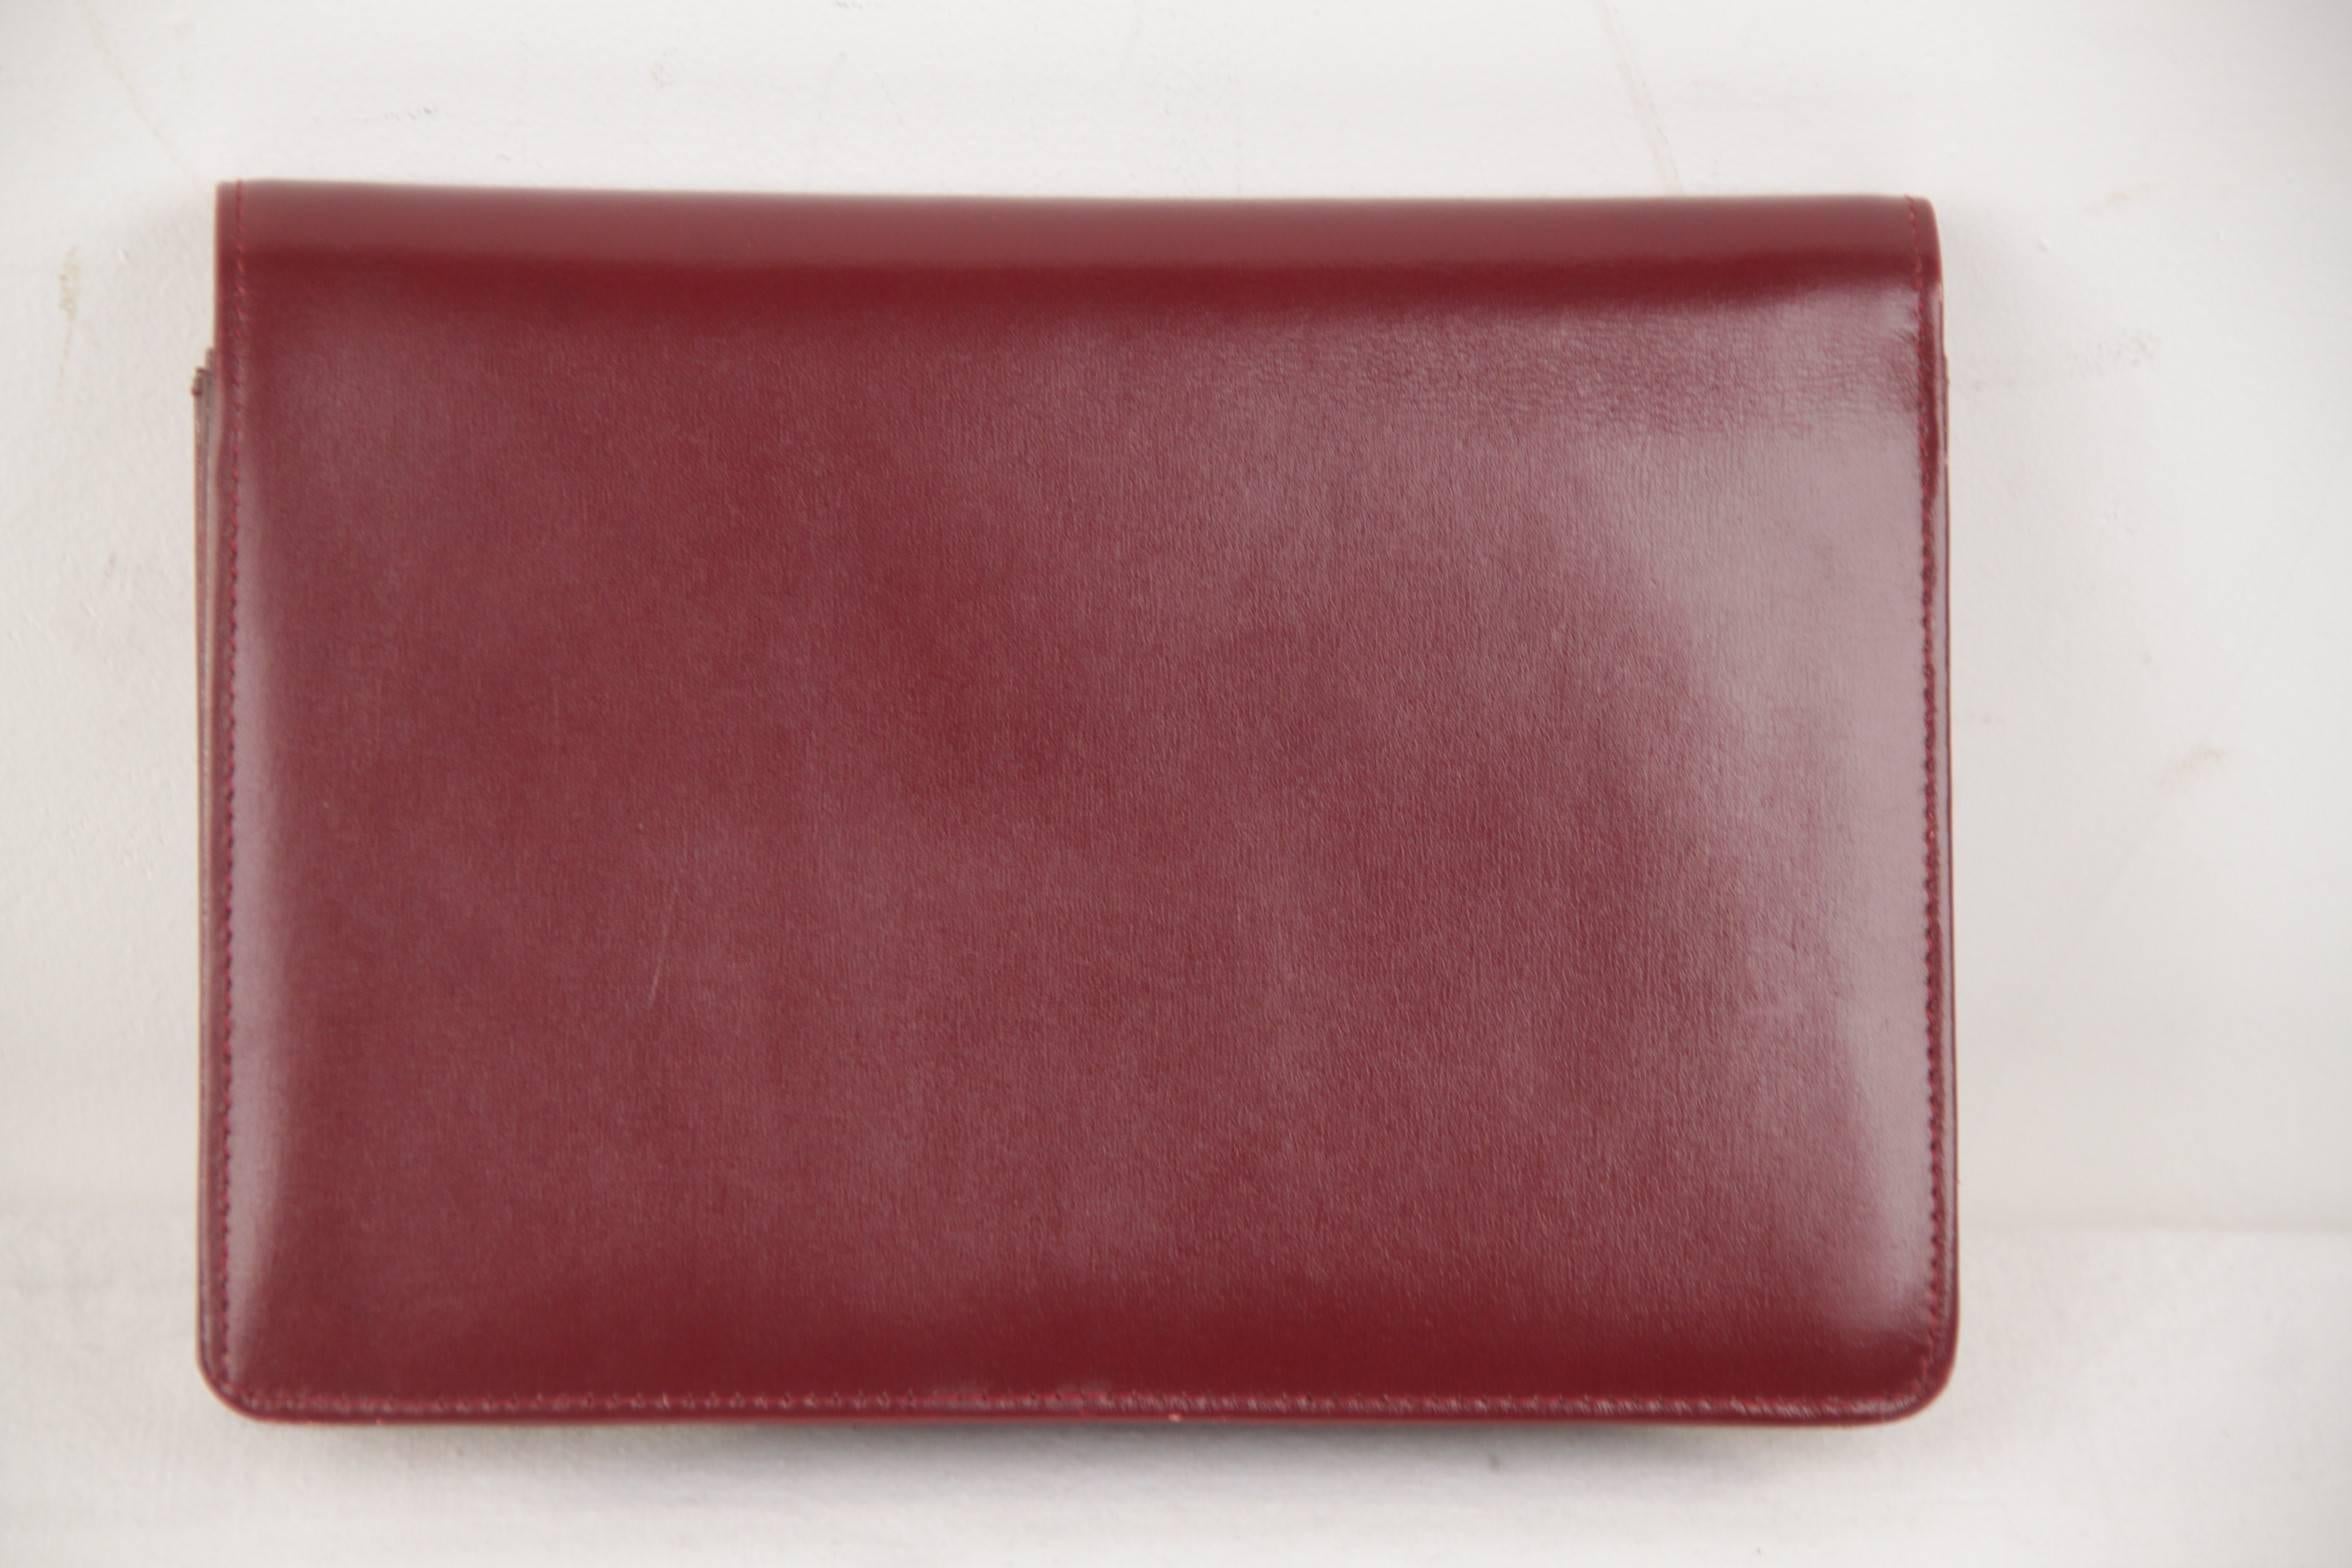 burgundy leather clutch bag